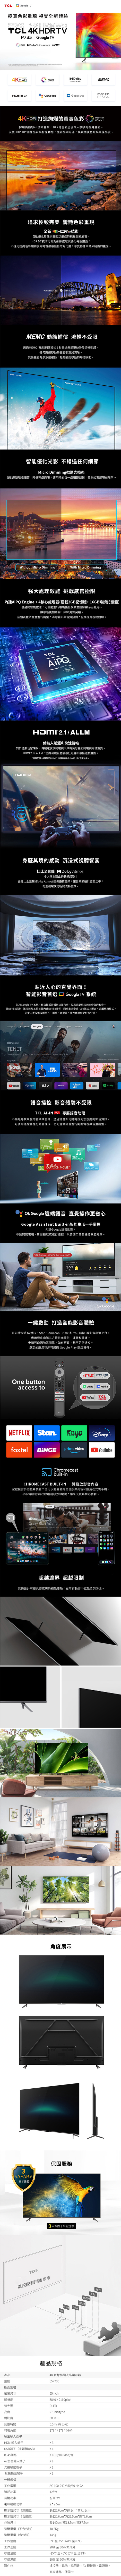 TCL 55吋 55P737 4K Google TV 智能連網液晶顯示器 P737系列